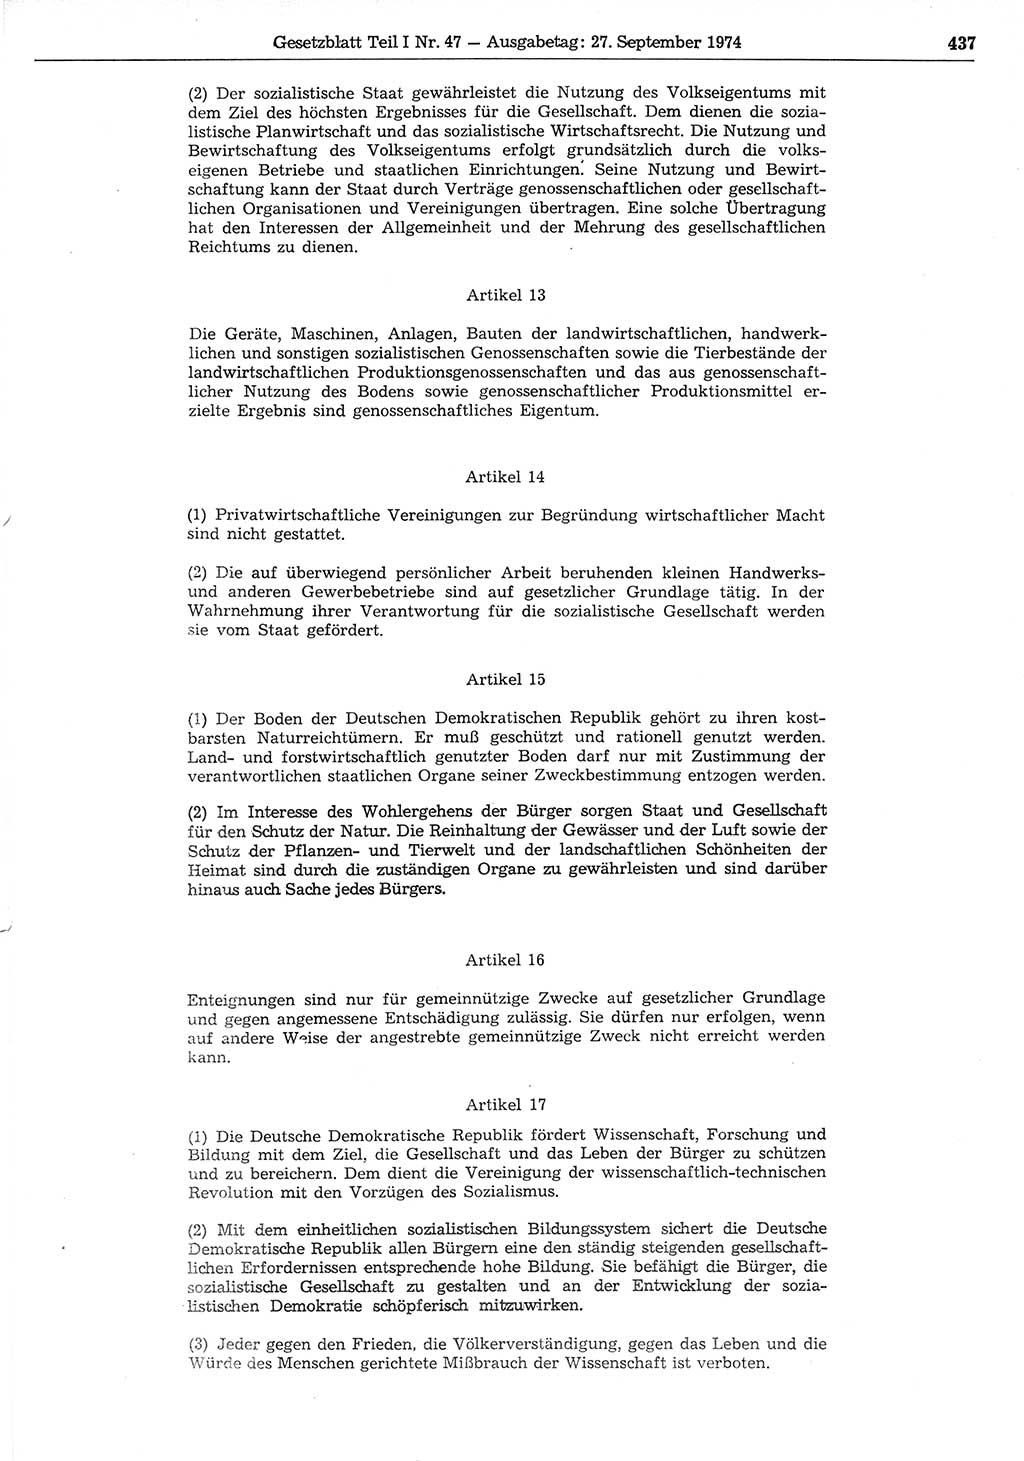 Gesetzblatt (GBl.) der Deutschen Demokratischen Republik (DDR) Teil Ⅰ 1974, Seite 437 (GBl. DDR Ⅰ 1974, S. 437)